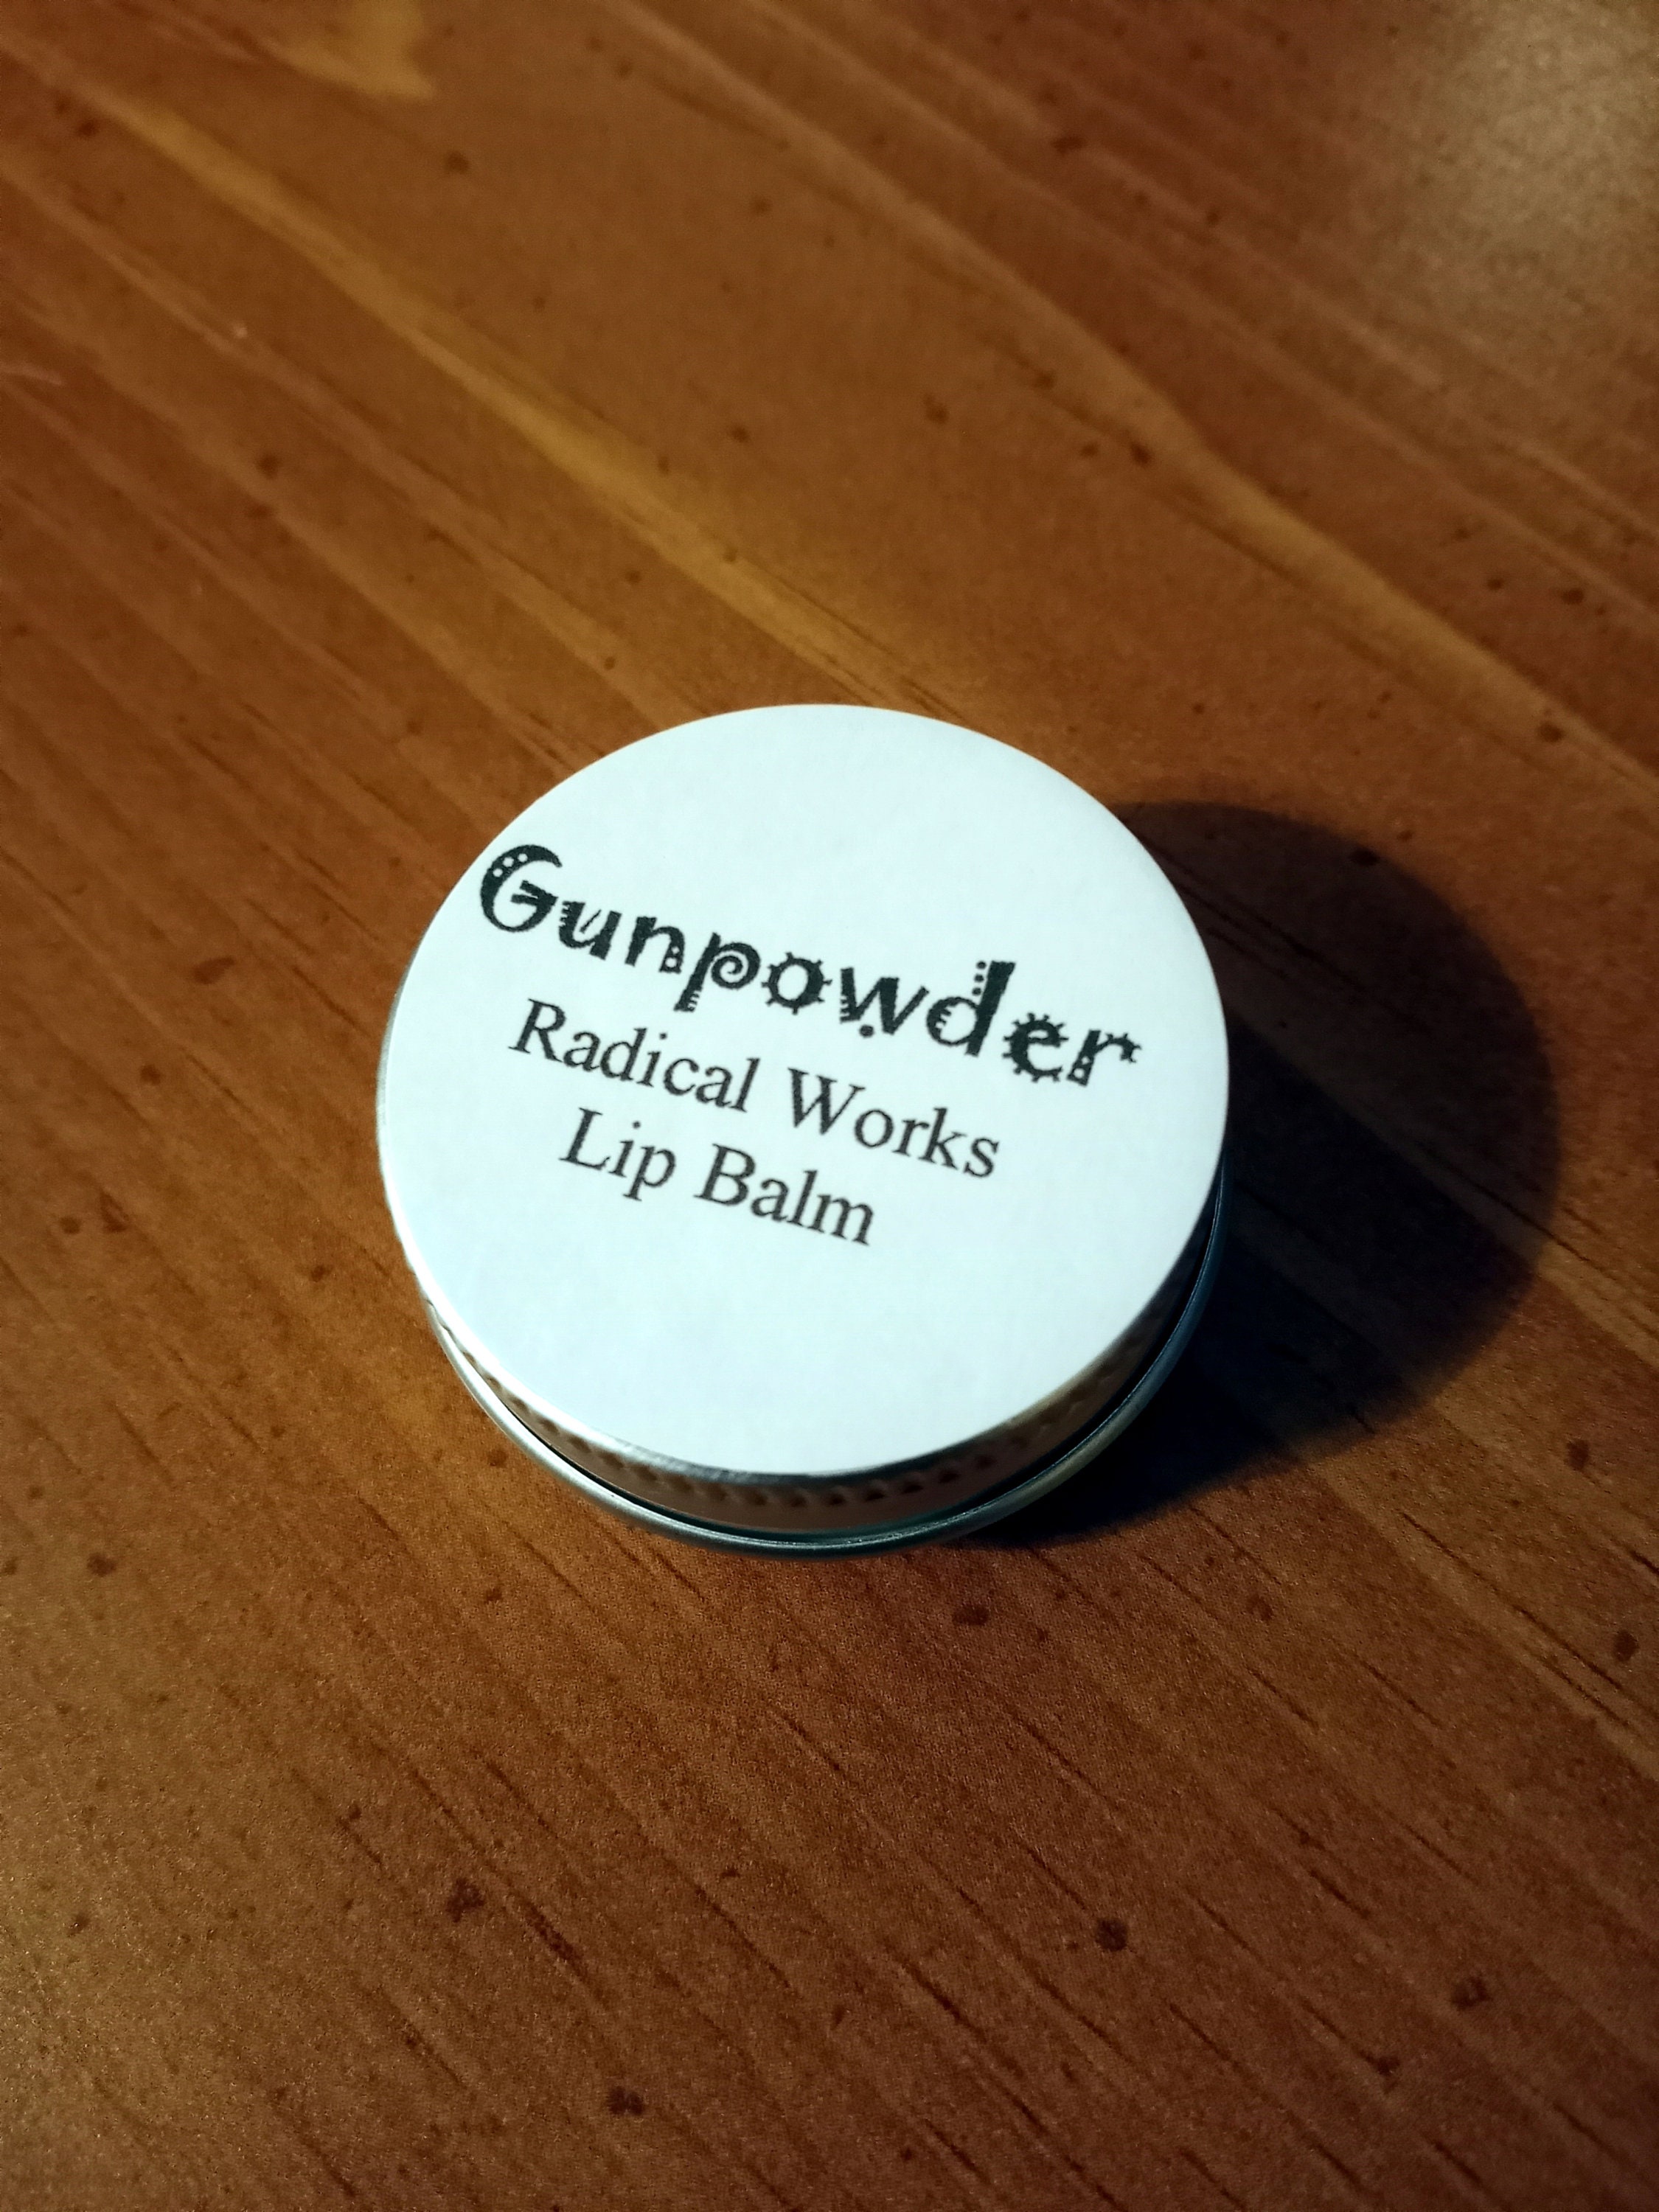 Gunpowder & Leather Fragrance Oil 2oz 